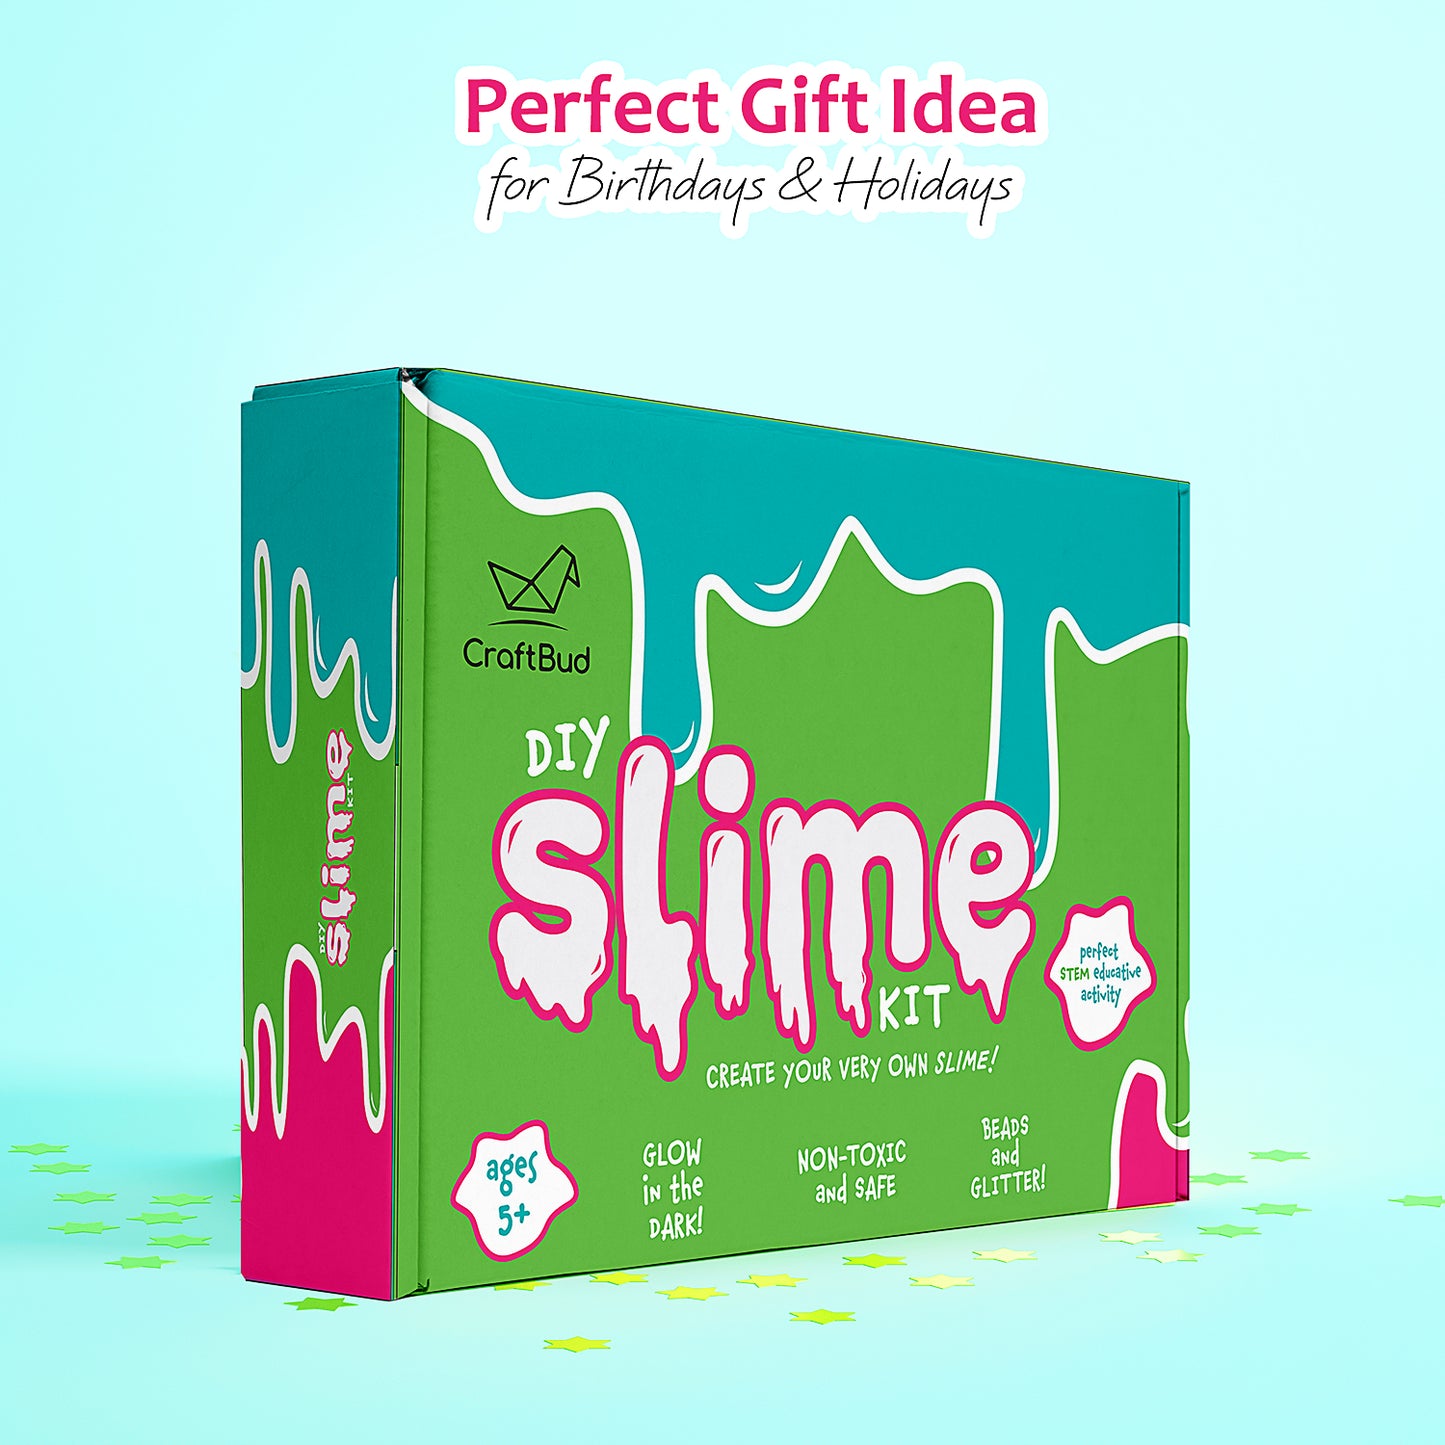 CraftBud Slime Kit DIY Toy